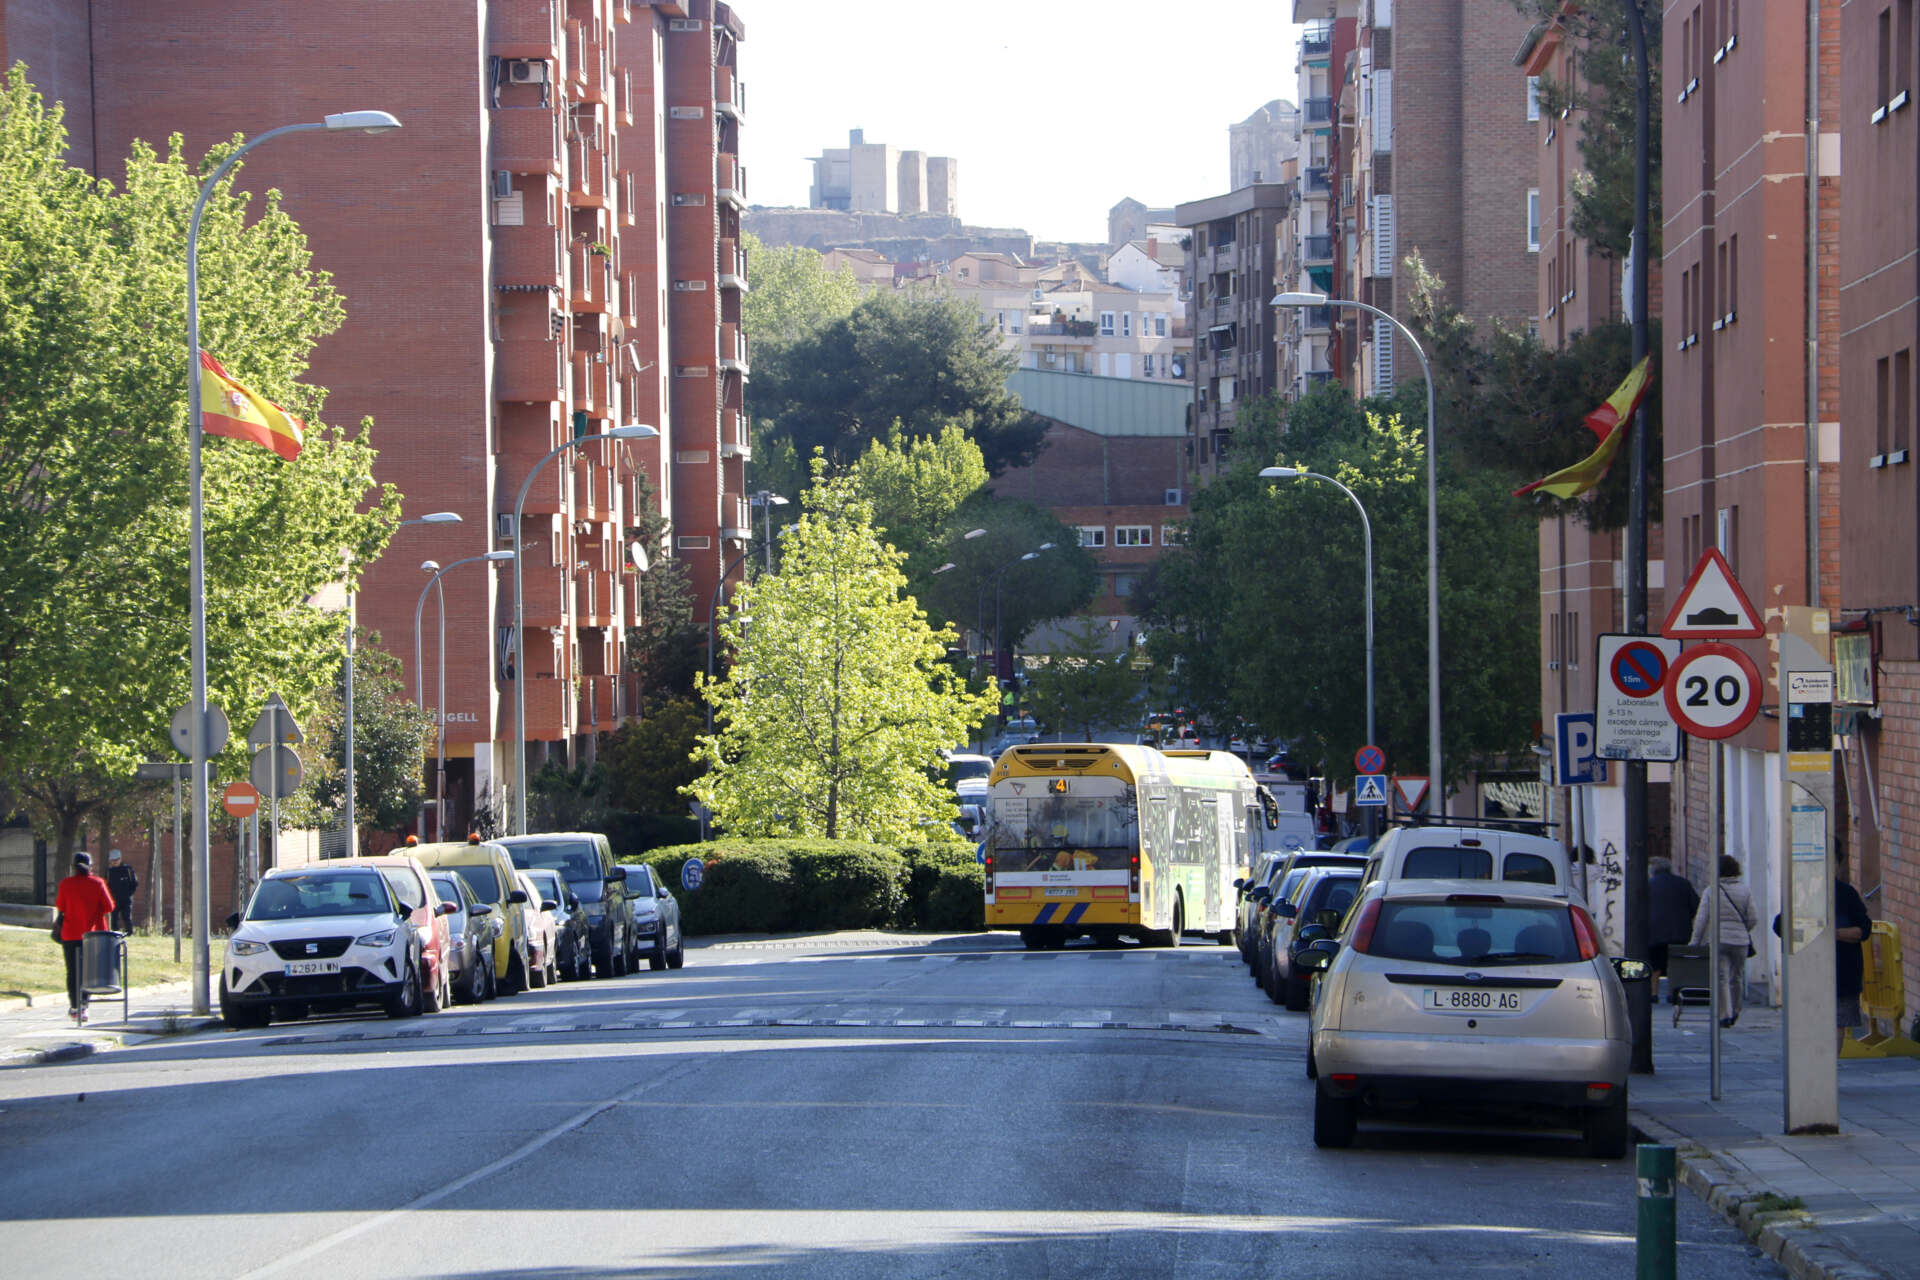 Atenció: Multitudinària baralla en un barri de Lleida